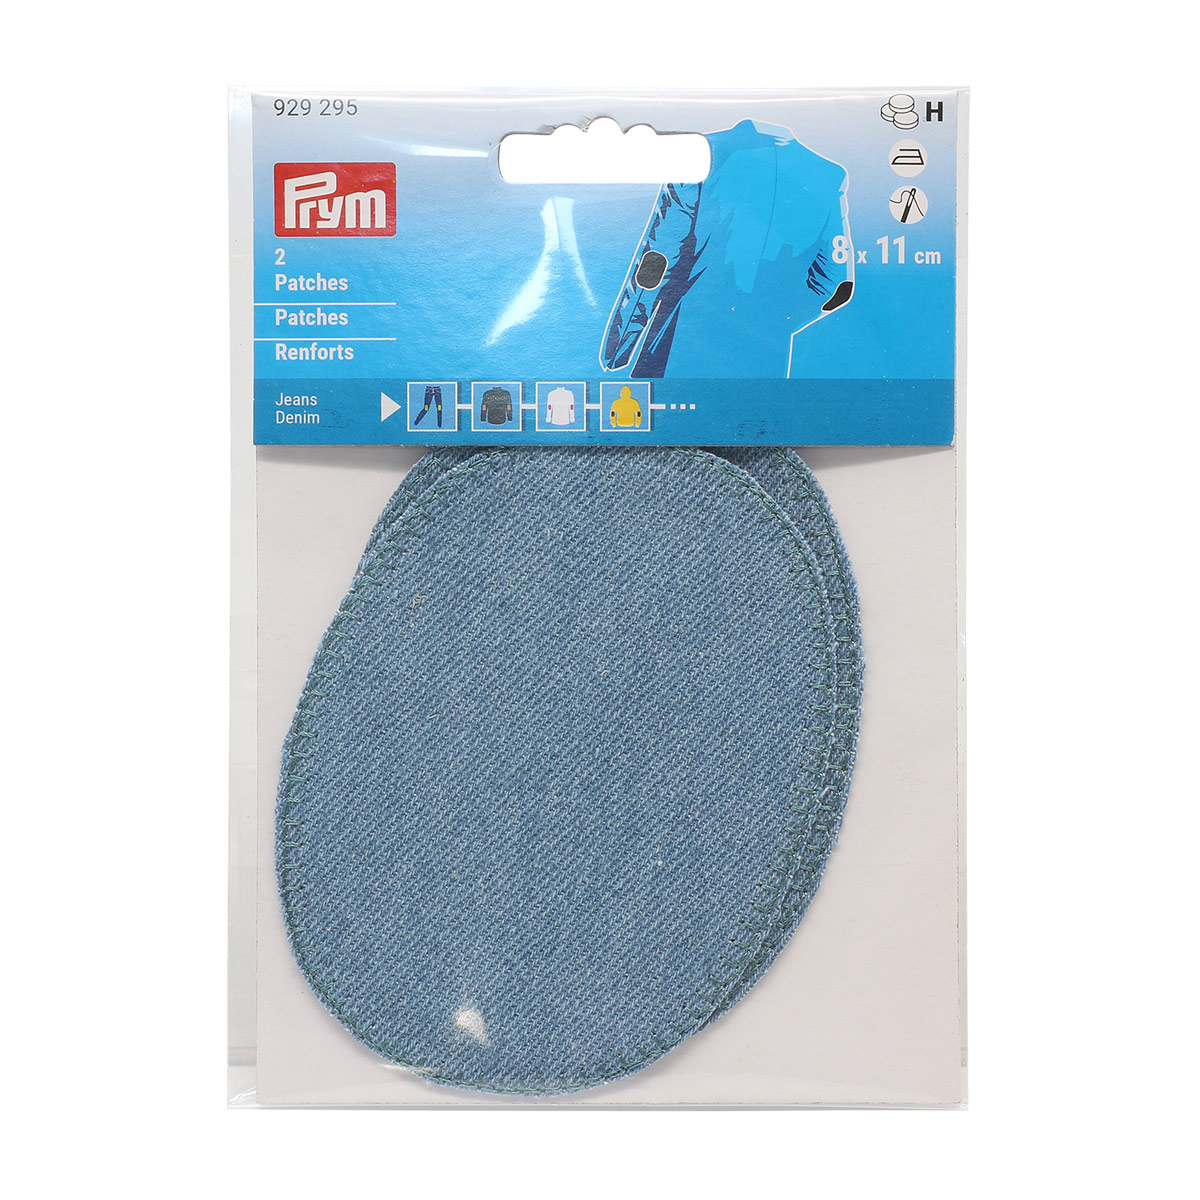 Заплатка Prym термоклеевая из джинсовой ткани деним для уплотнения ткани 8х11 см голубой 929295 - фото 1